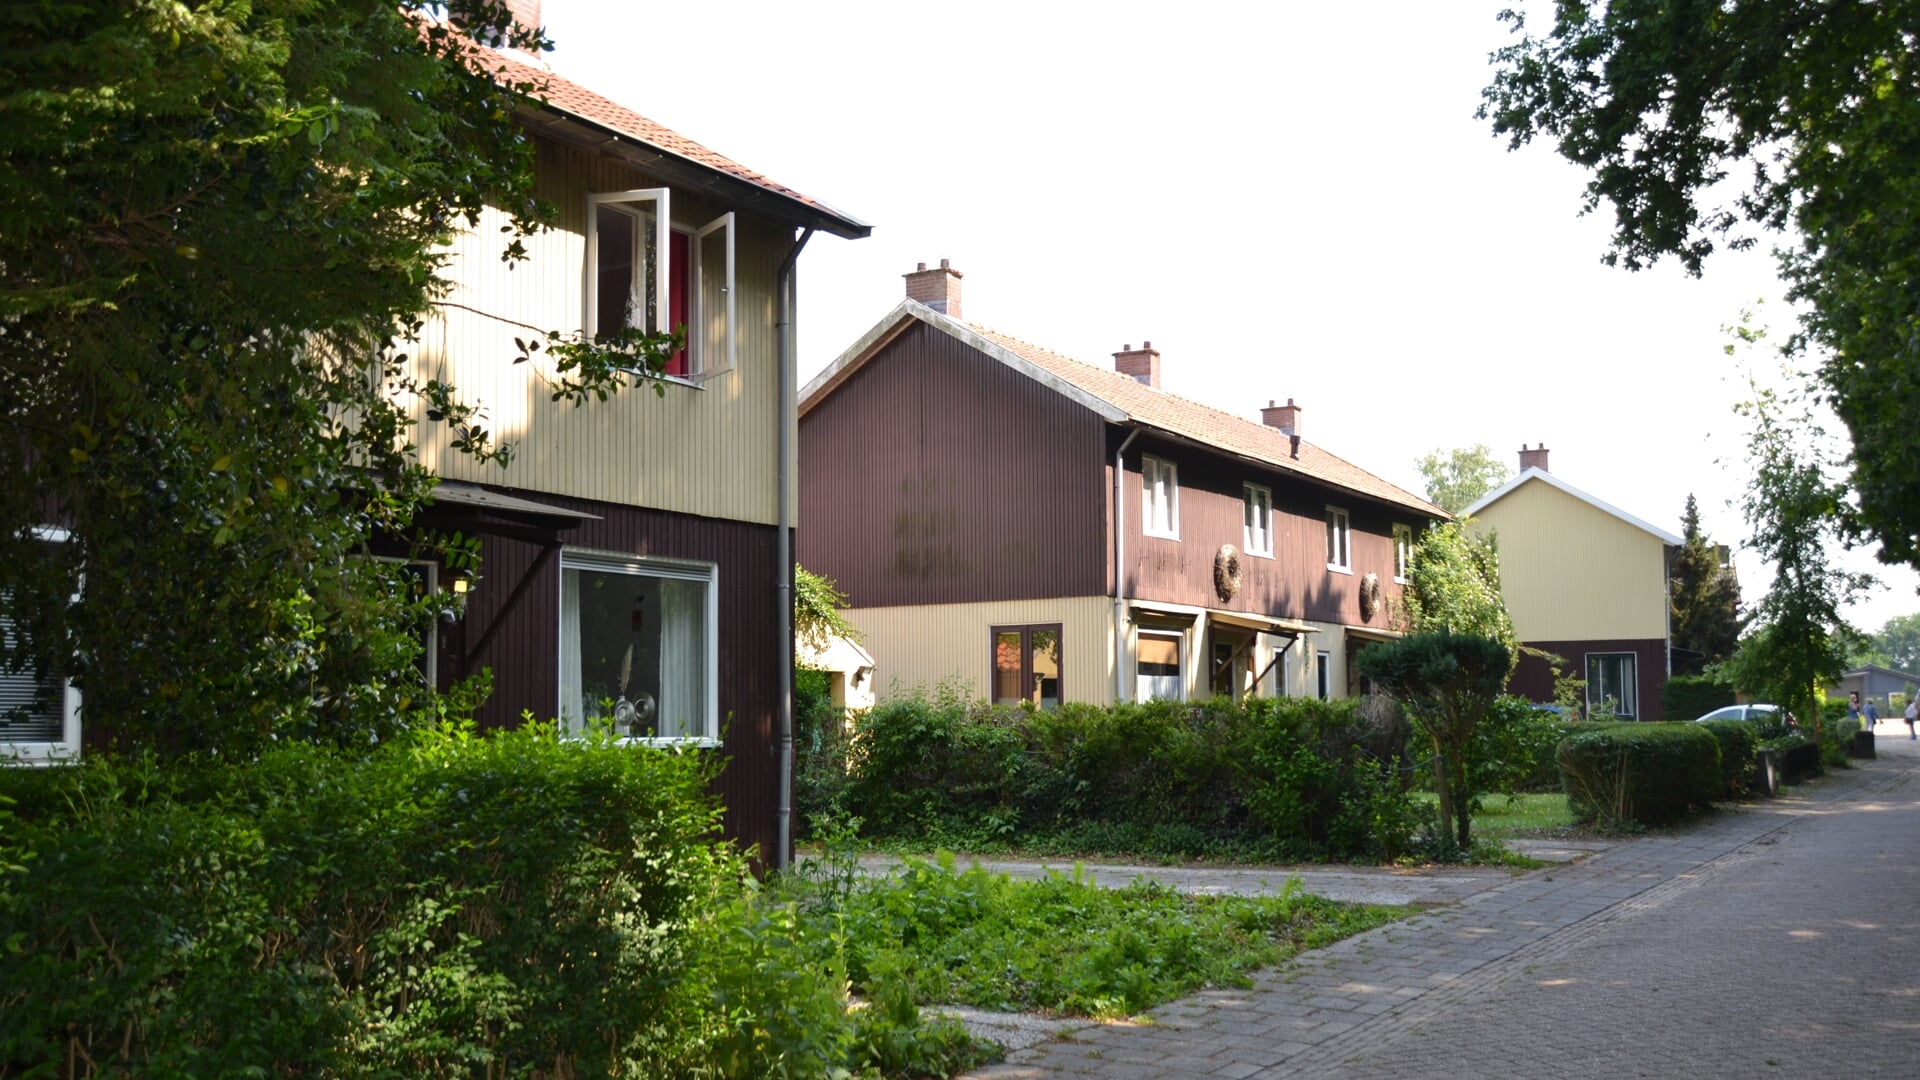 De woningen aan de Zweedsestraat die gebouwd zijn na de Watersnoodramp in 1953 grenzend aan landgoed de Hertgang in Halsteren.